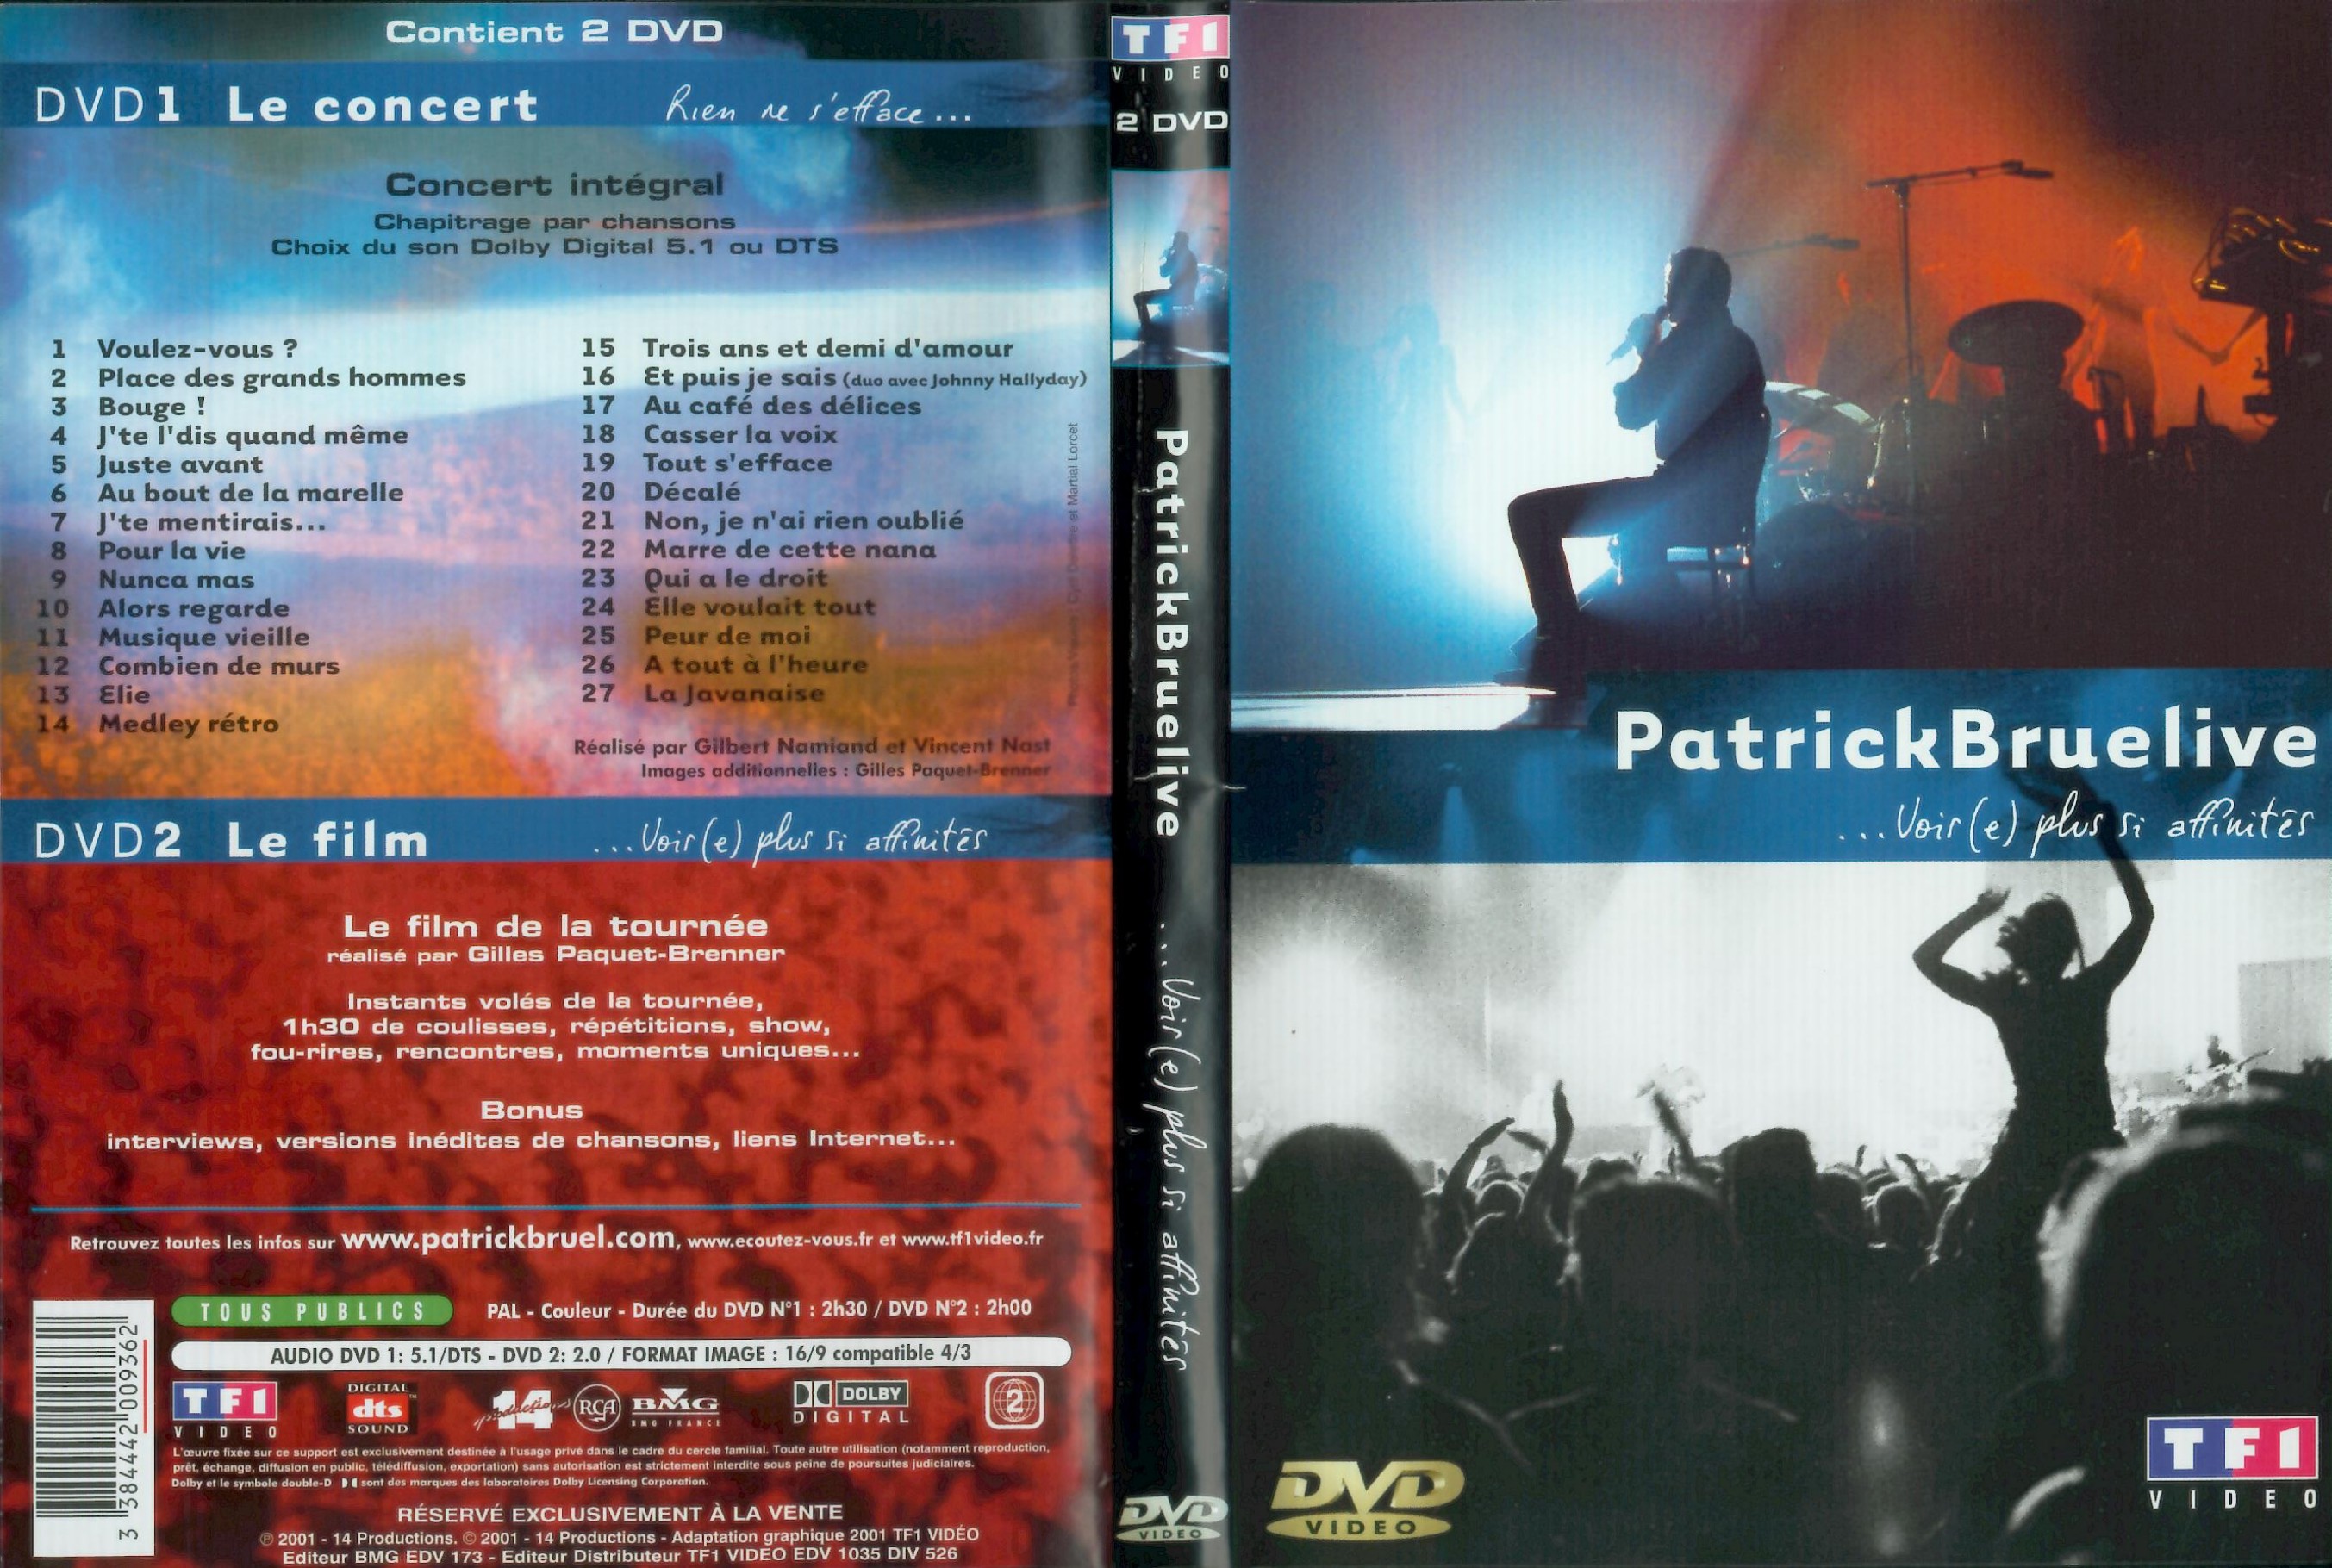 Jaquette DVD Patrick Bruel  Live voir plus si affinits